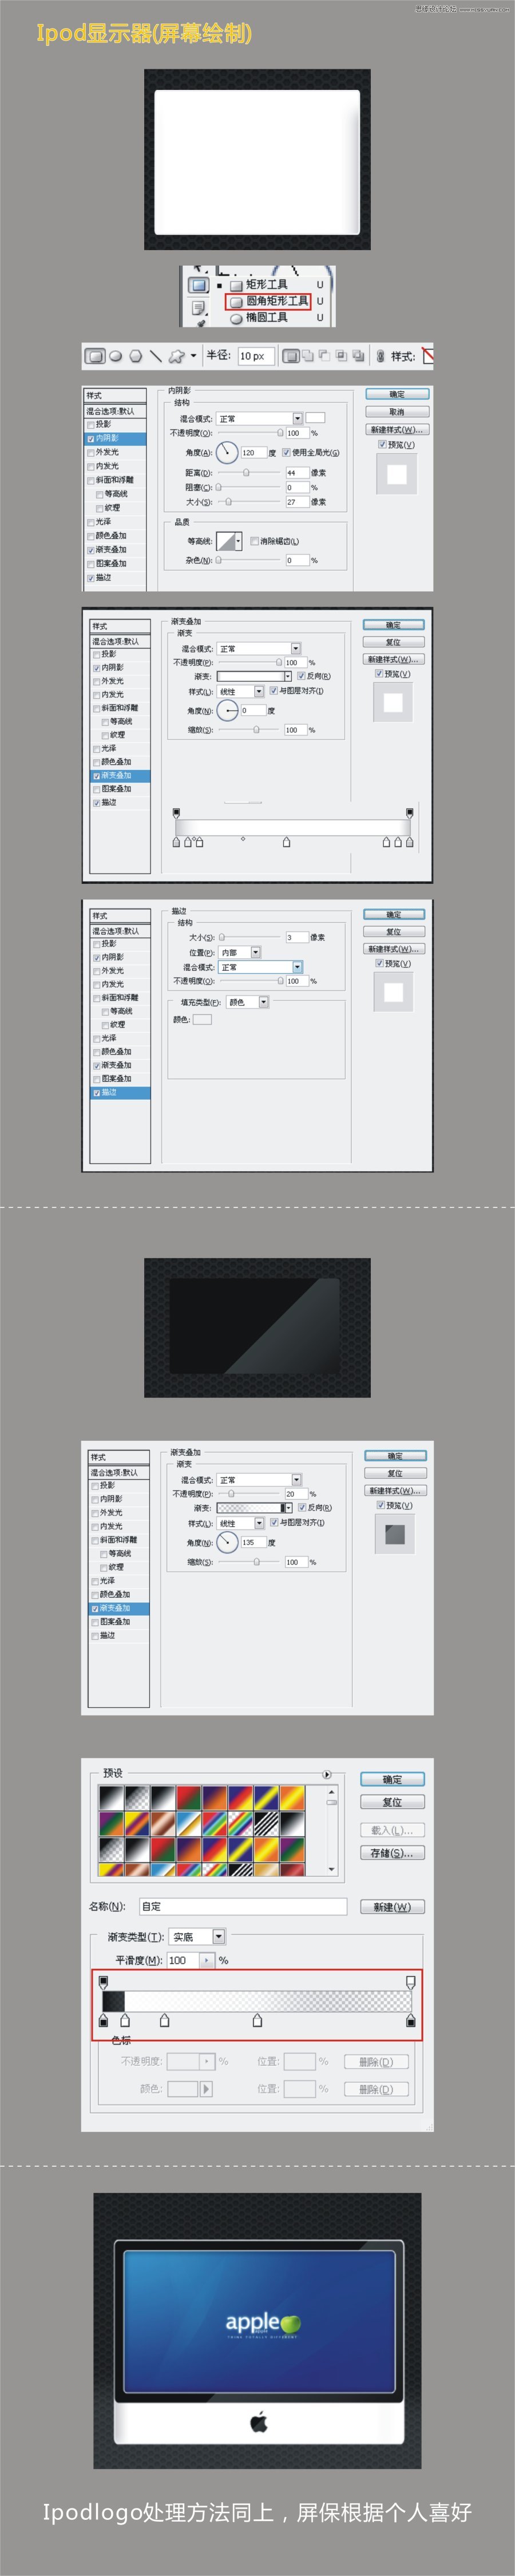 Photoshop绘制质感的苹果电脑图标教程,PS教程,16xx8.com教程网